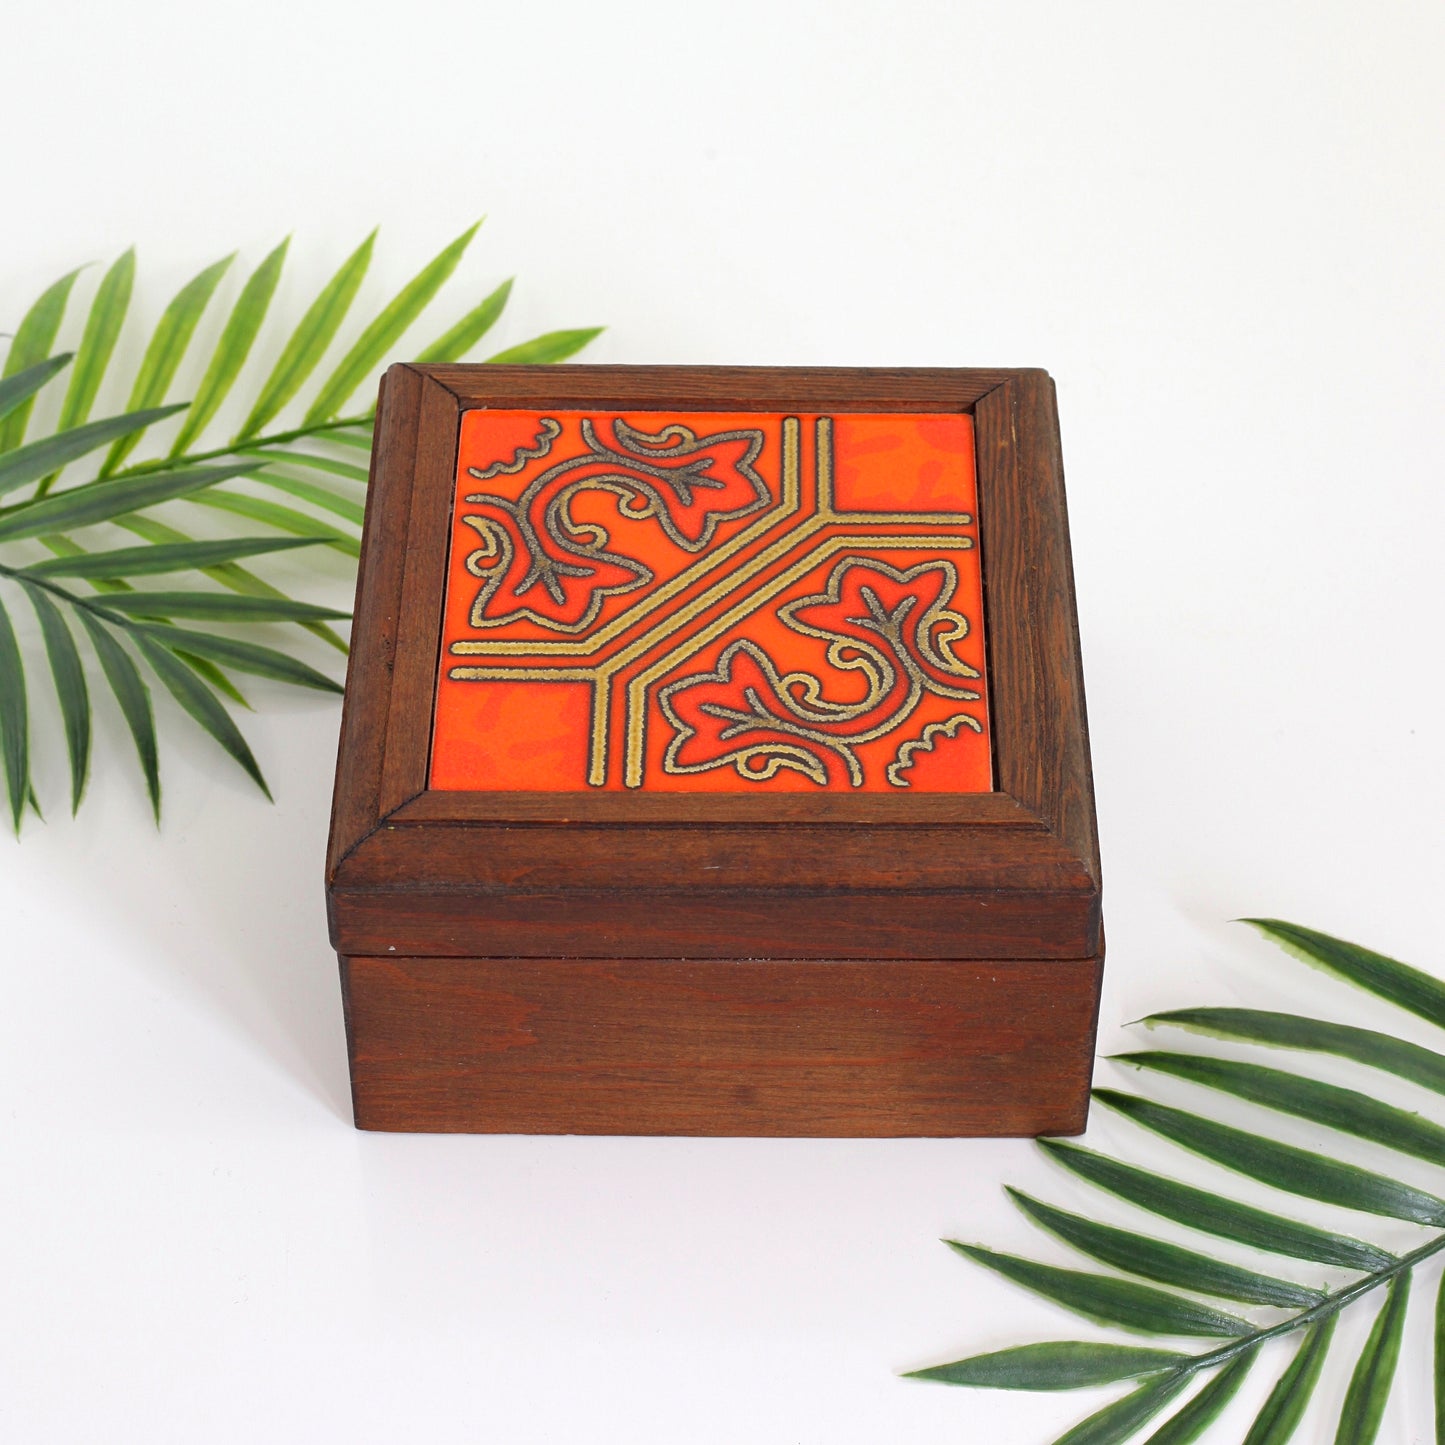 SOLD - Vintage Wood & Ceramic Tile Trinket Box